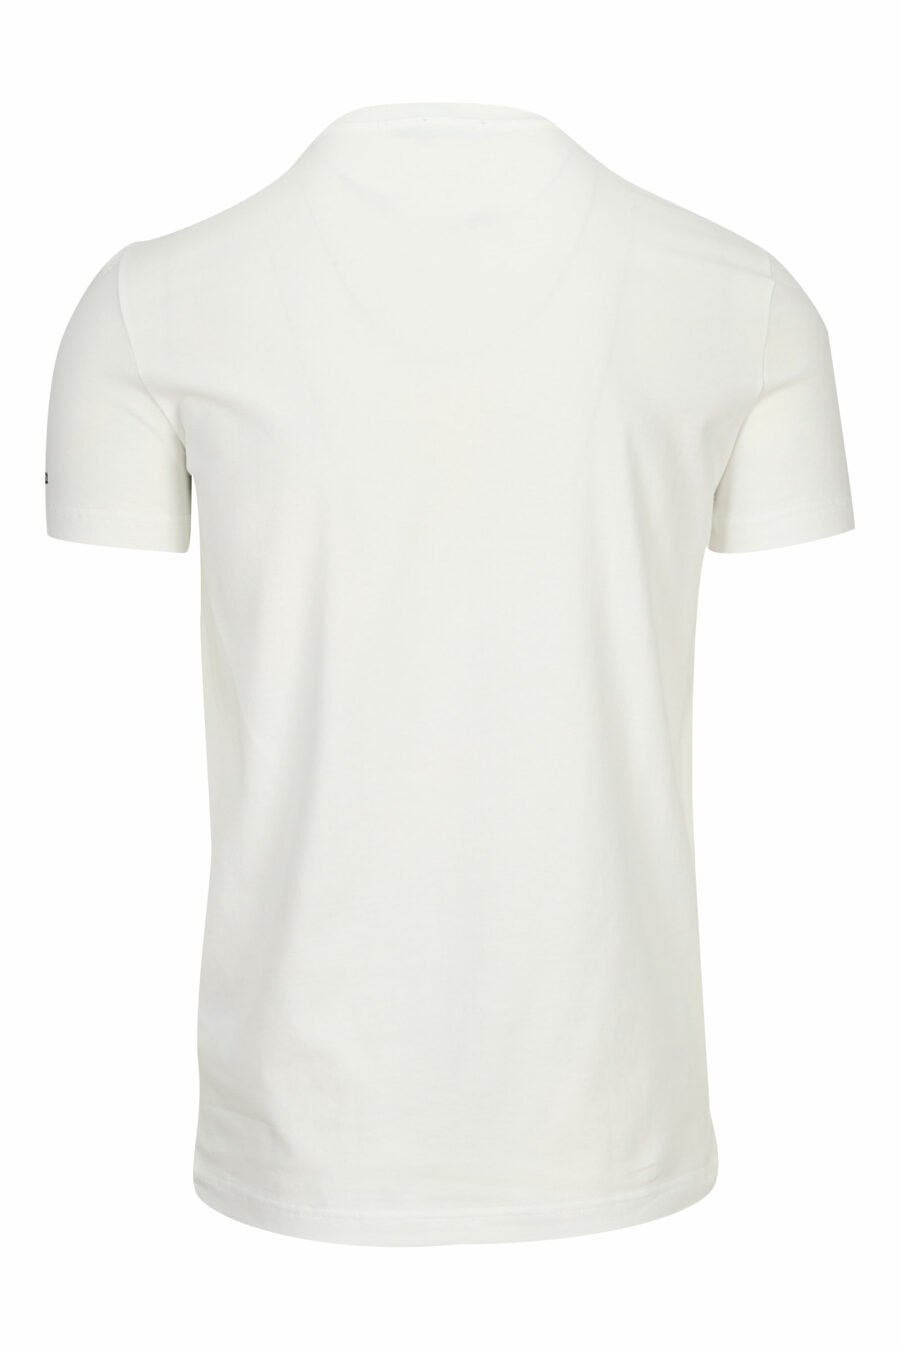 T-shirt branca com "roupa interior" minilogue - 8032674811561 1